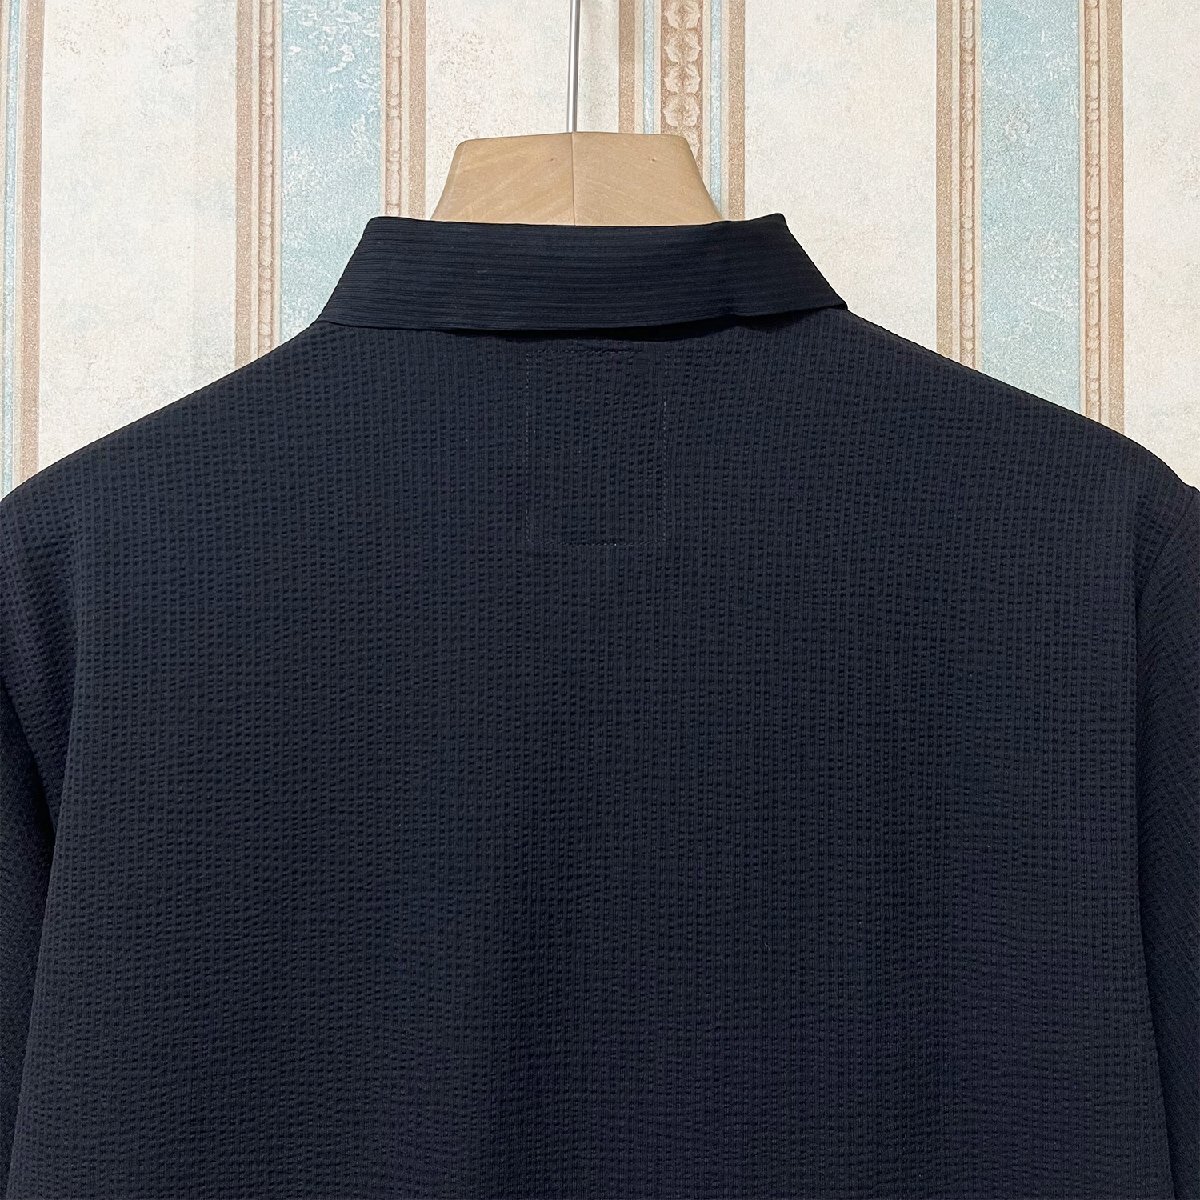 絶賛 定価3万 FRANKLIN MUSK・アメリカ・ニューヨーク発 ポロシャツ 高品質シルク/コットン混 薄手 速乾 涼しい 洗練 ビジネス サイズ3_画像4